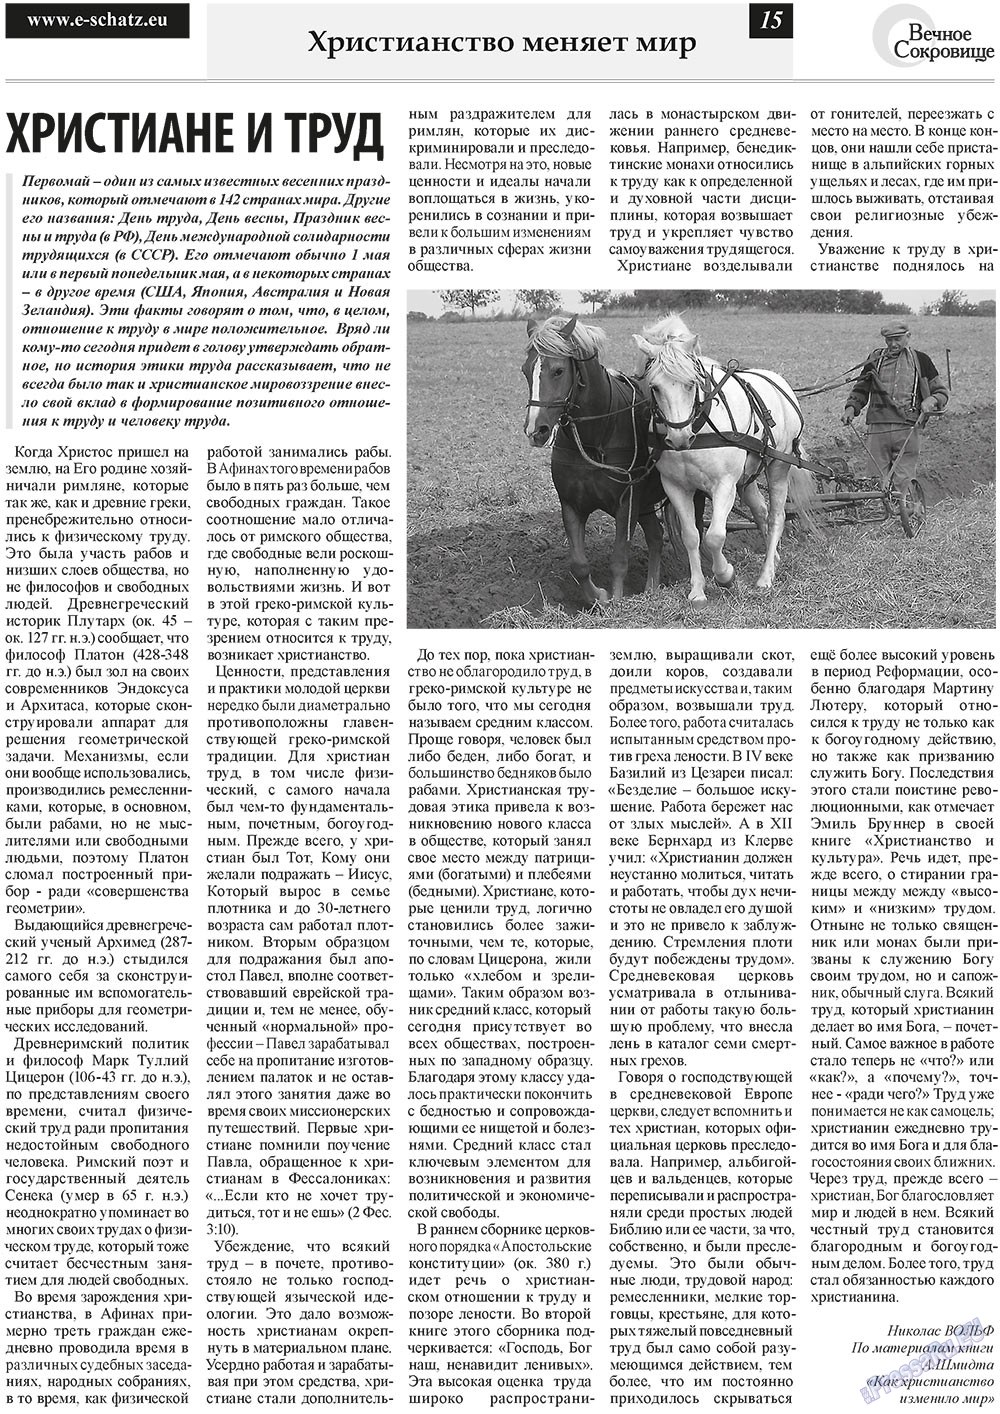 Вечное сокровище, газета. 2011 №2 стр.15